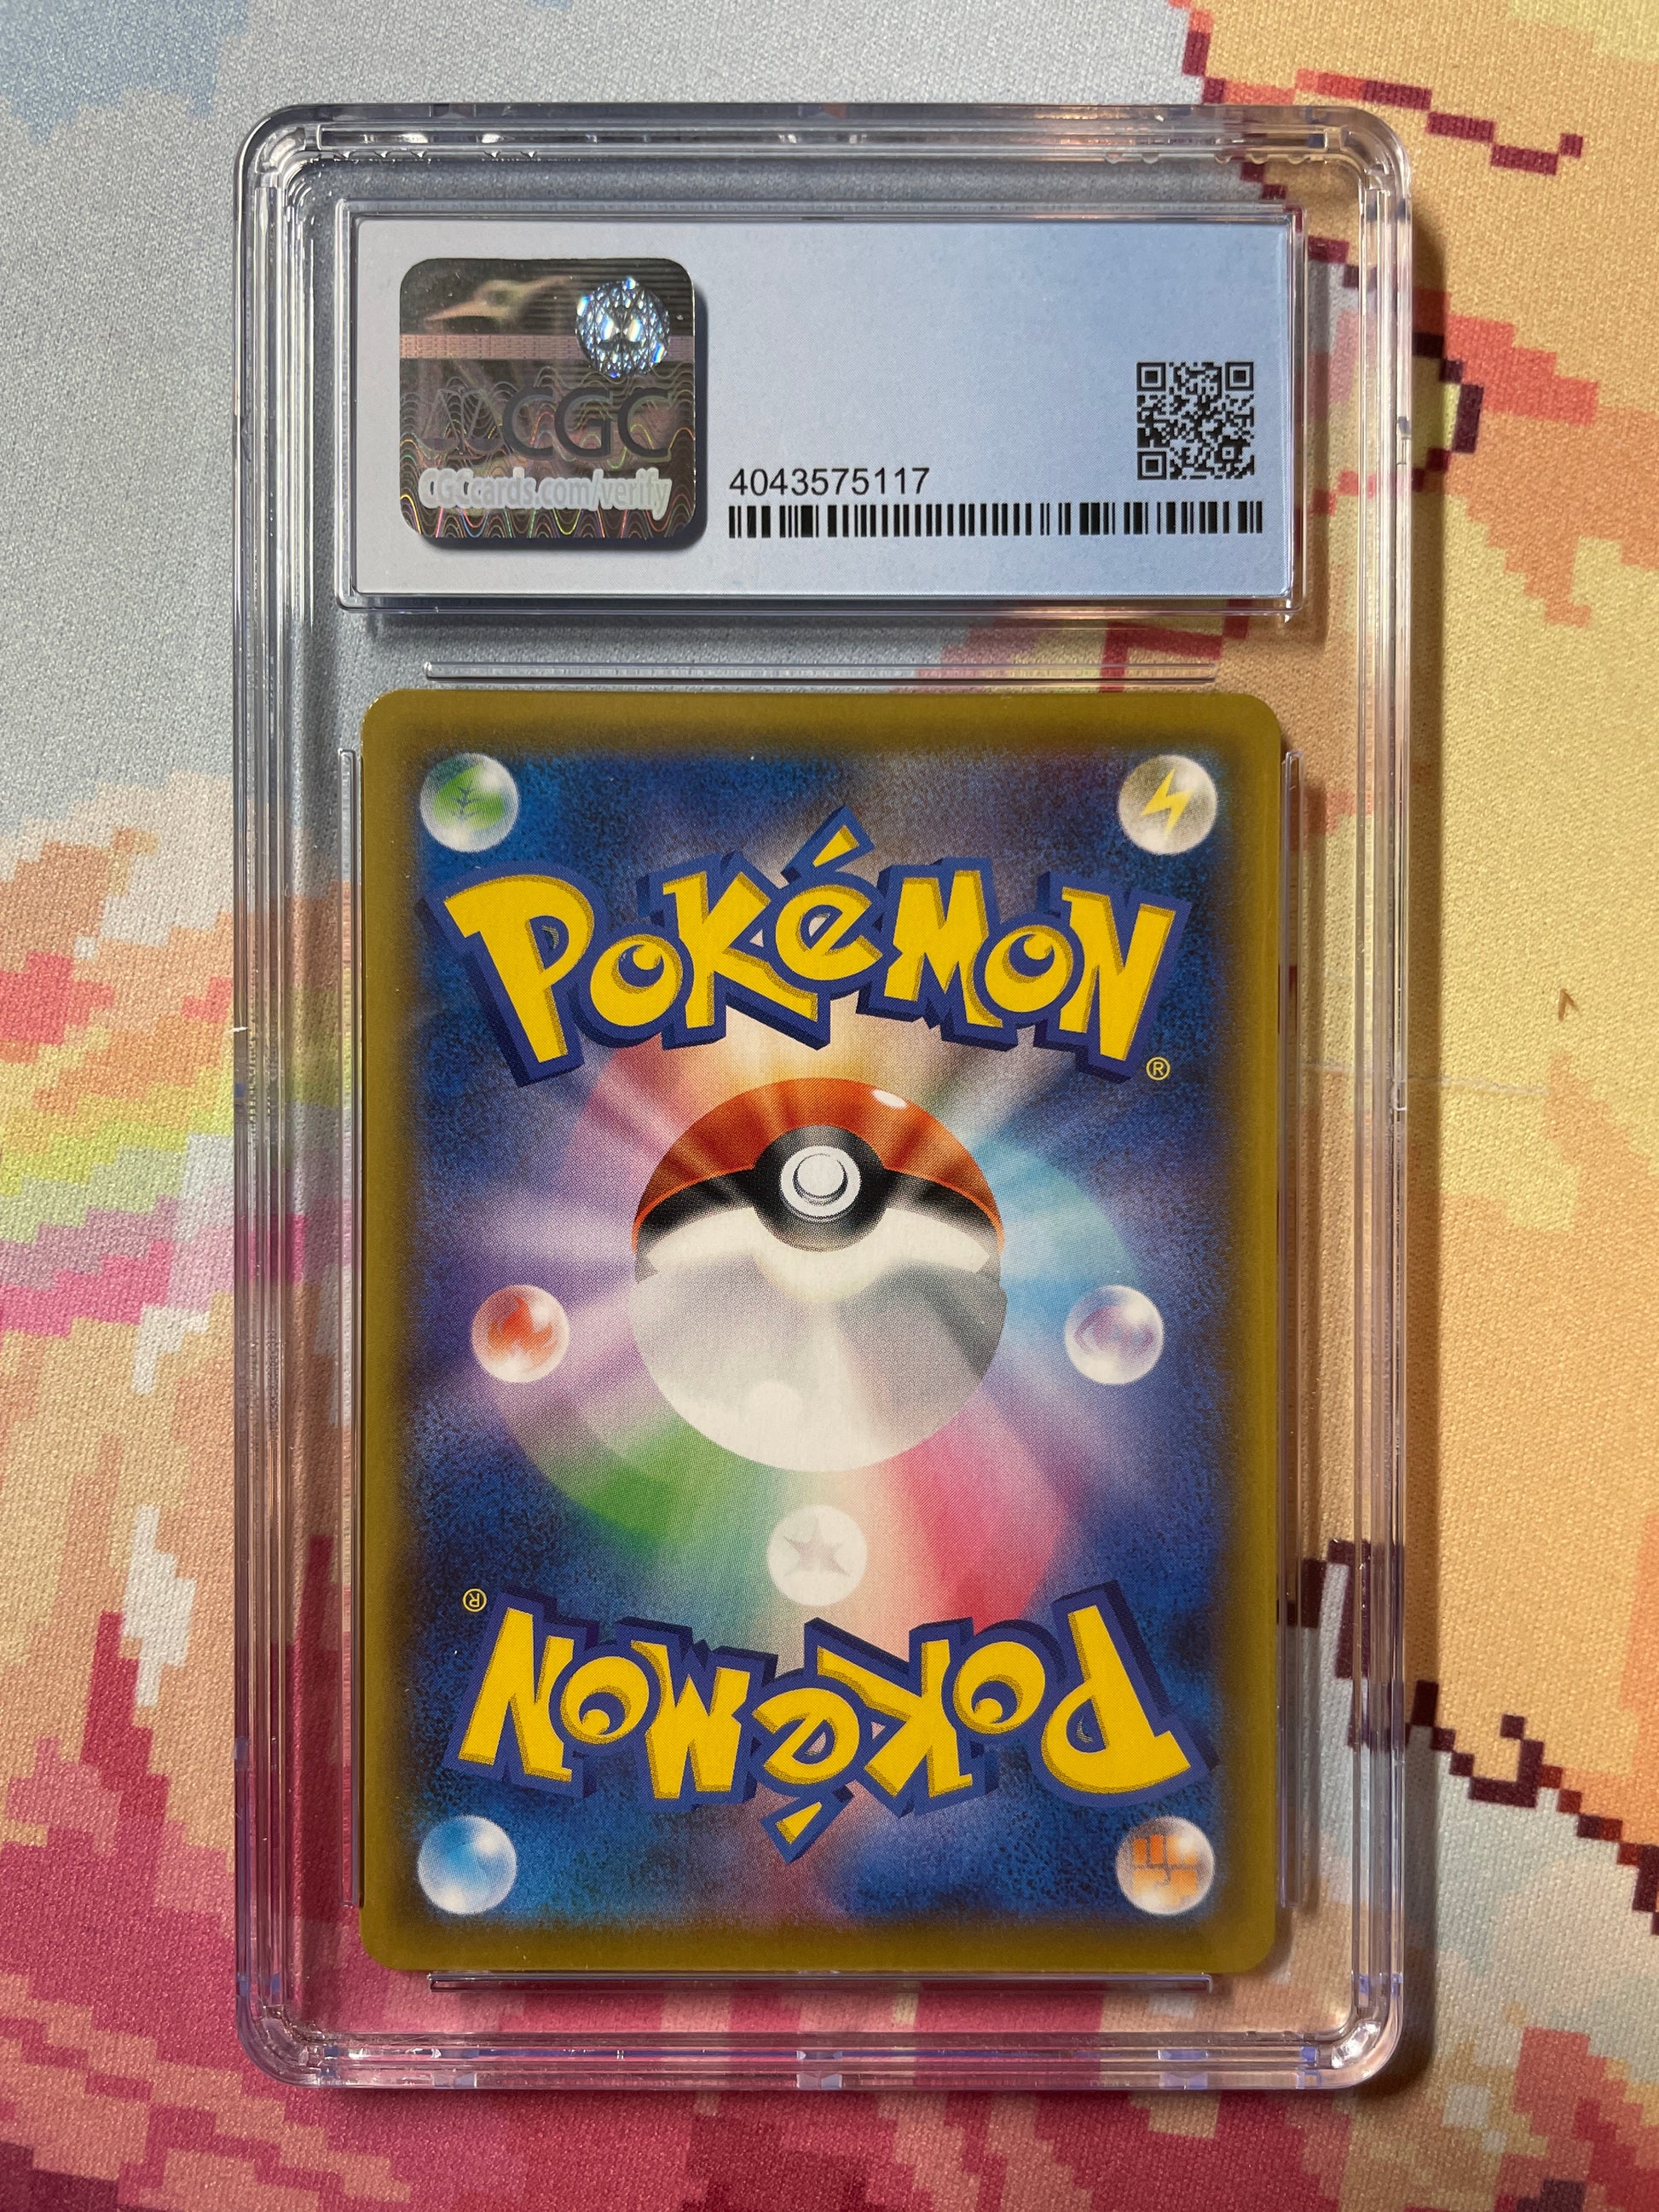 Pokémon Japanese Shiny Star V 021/190 Reshiram Amazing Rare GEM Mint 9 –  Cars N Cards